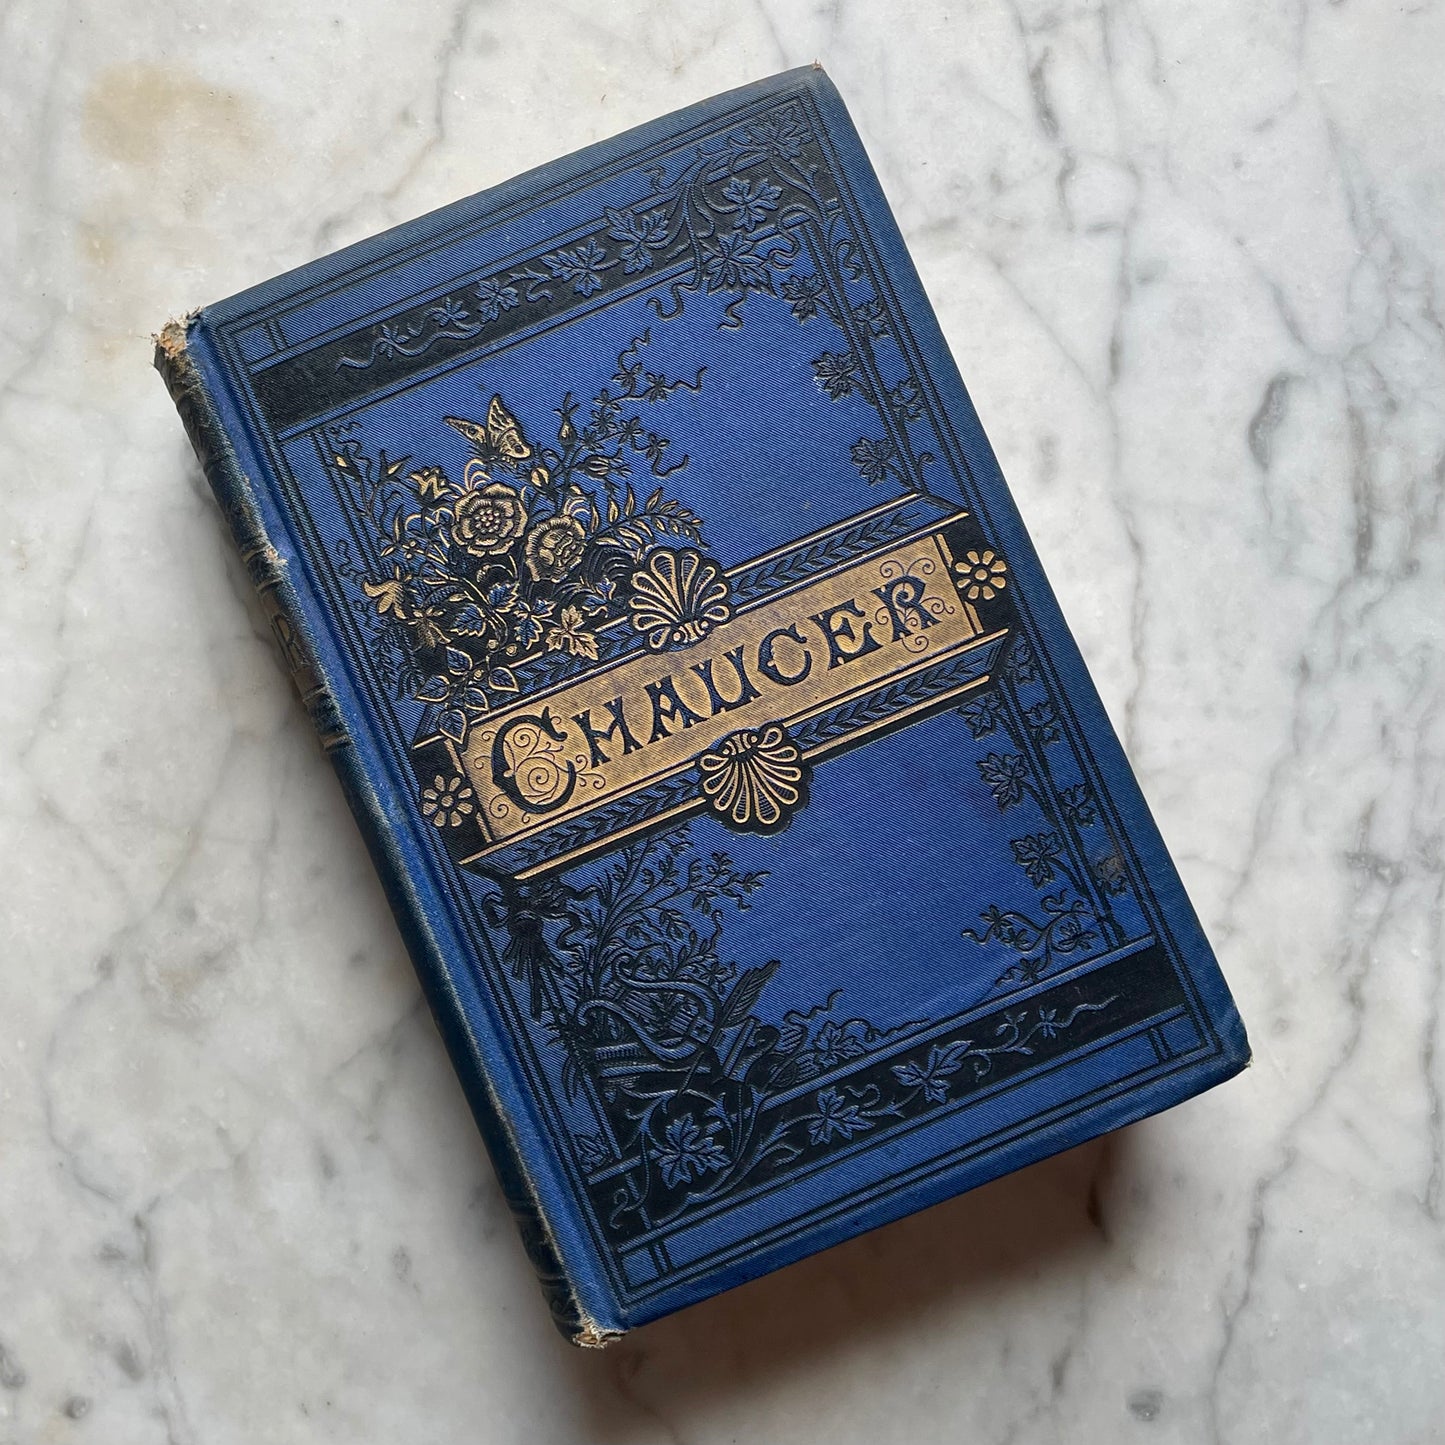 Works of Geoffrey Chaucer, 1883